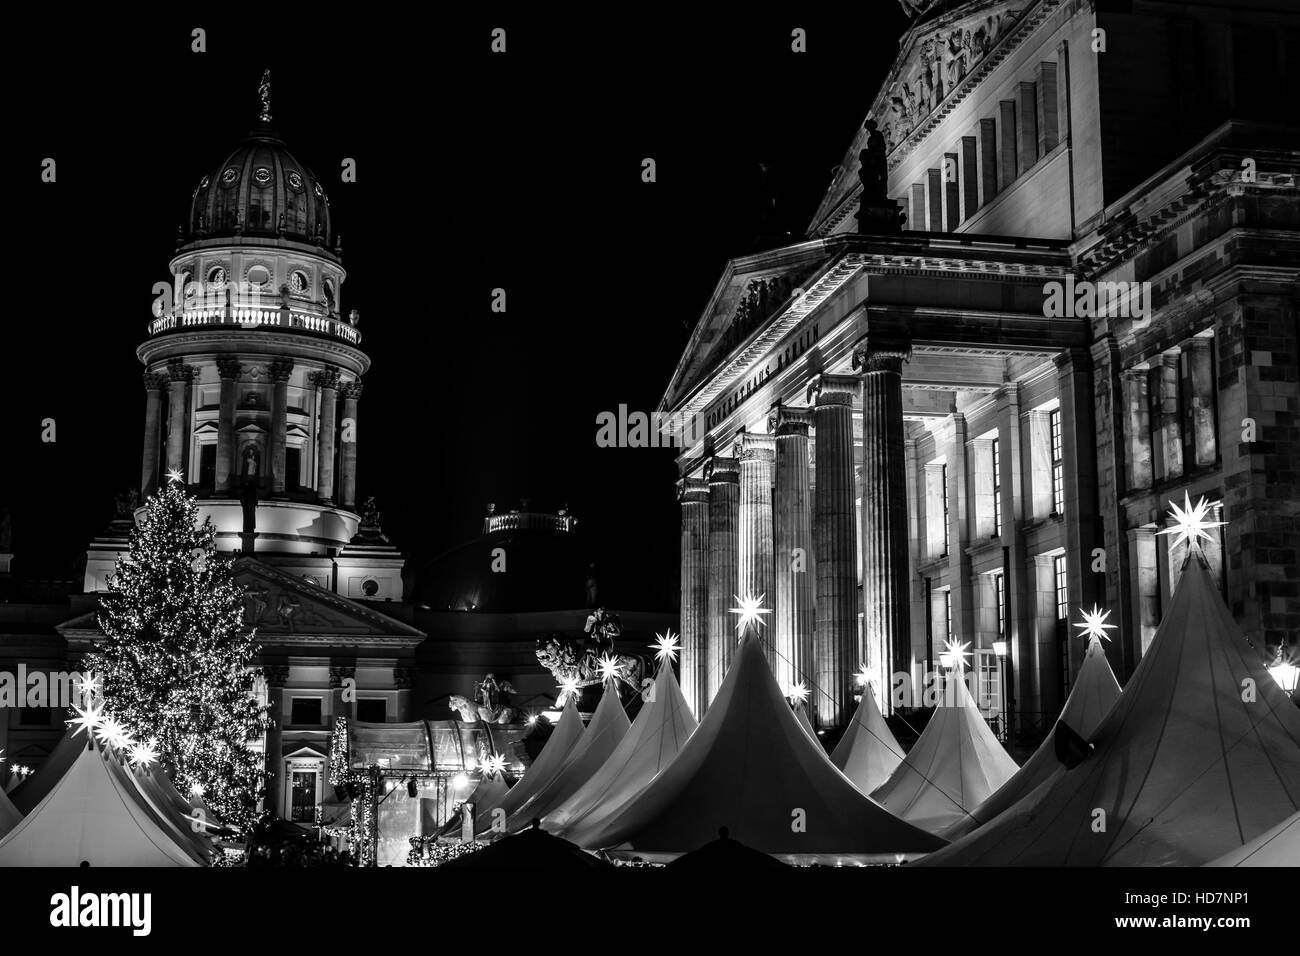 Marché de Noël sur la place de Gendarmenmarkt. Berlin. L'Allemagne. Noir et blanc. Banque D'Images